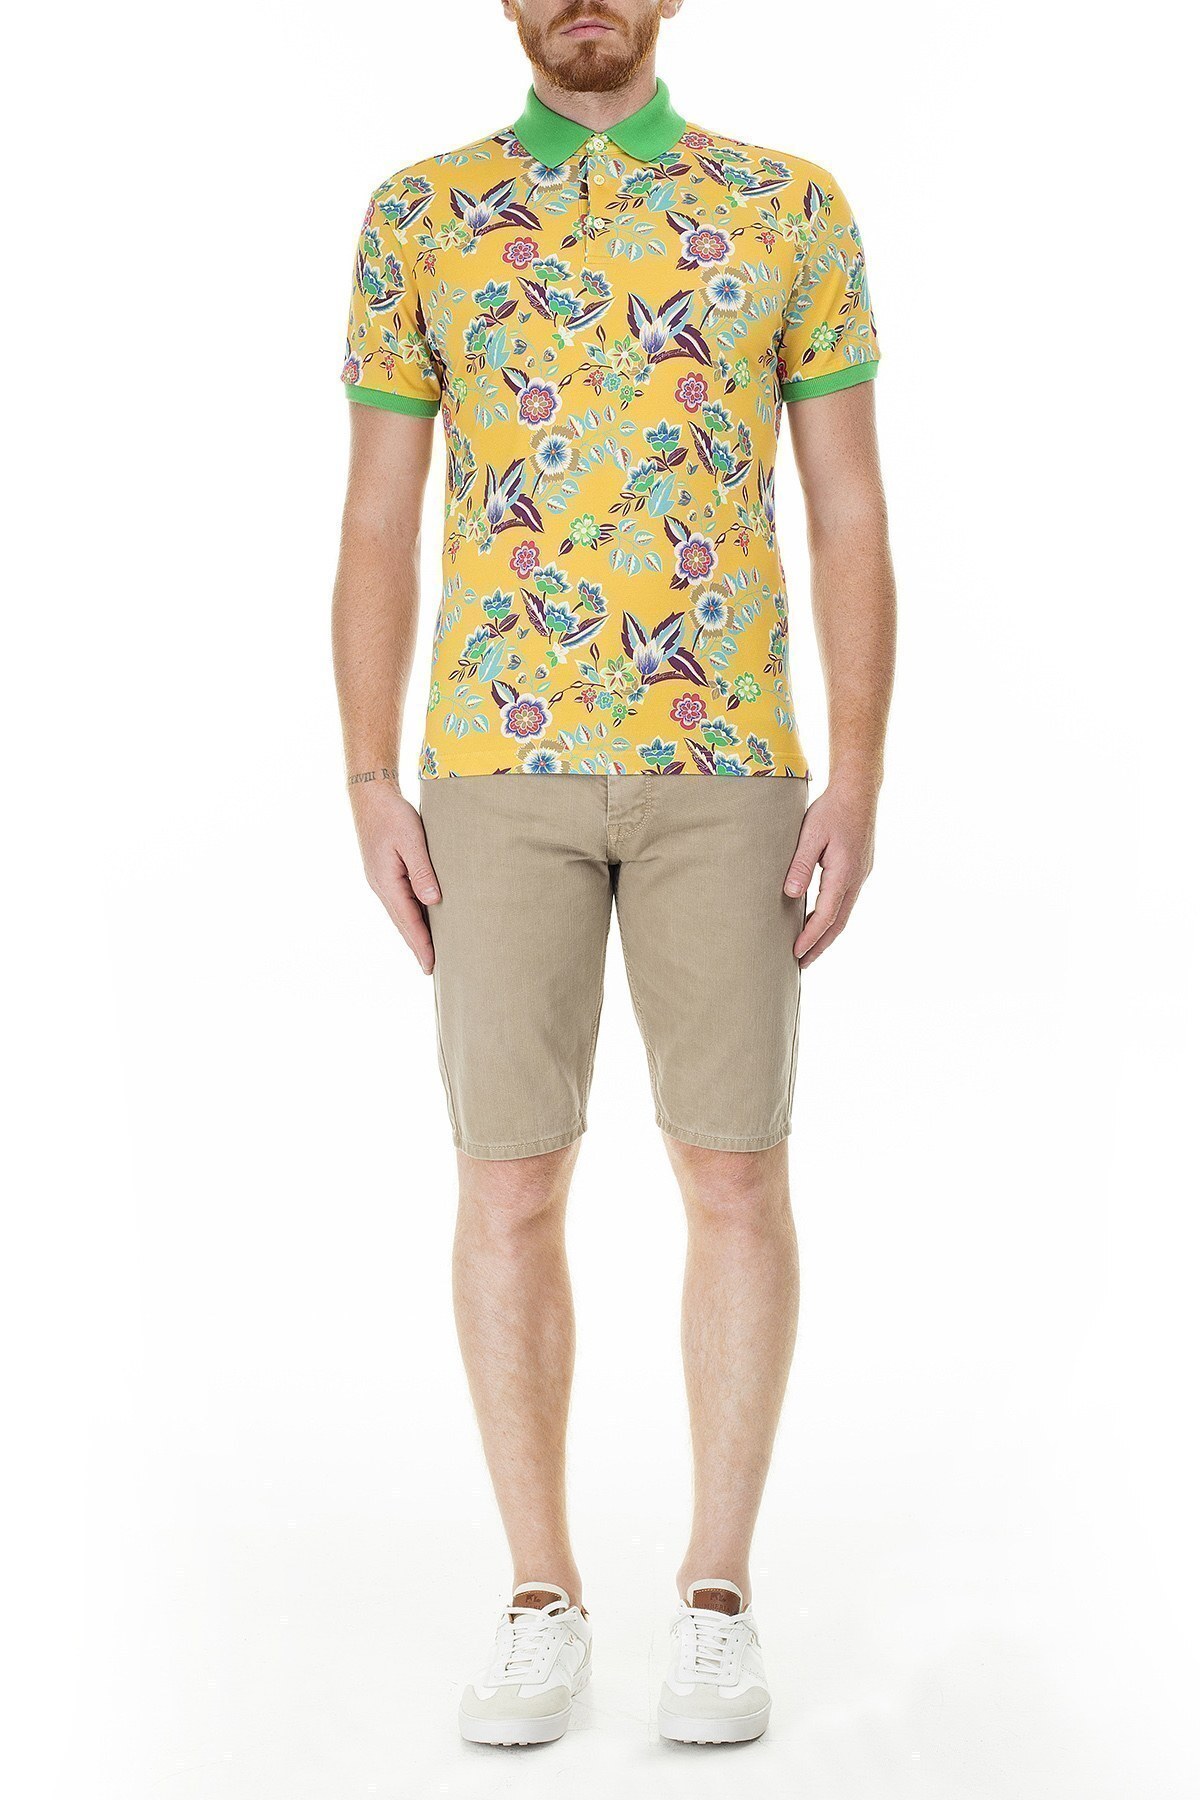 Etro Regular Fit Çiçek Desenli Düğmeli T Shirt Erkek Polo 1Y800 4059 700 SARI